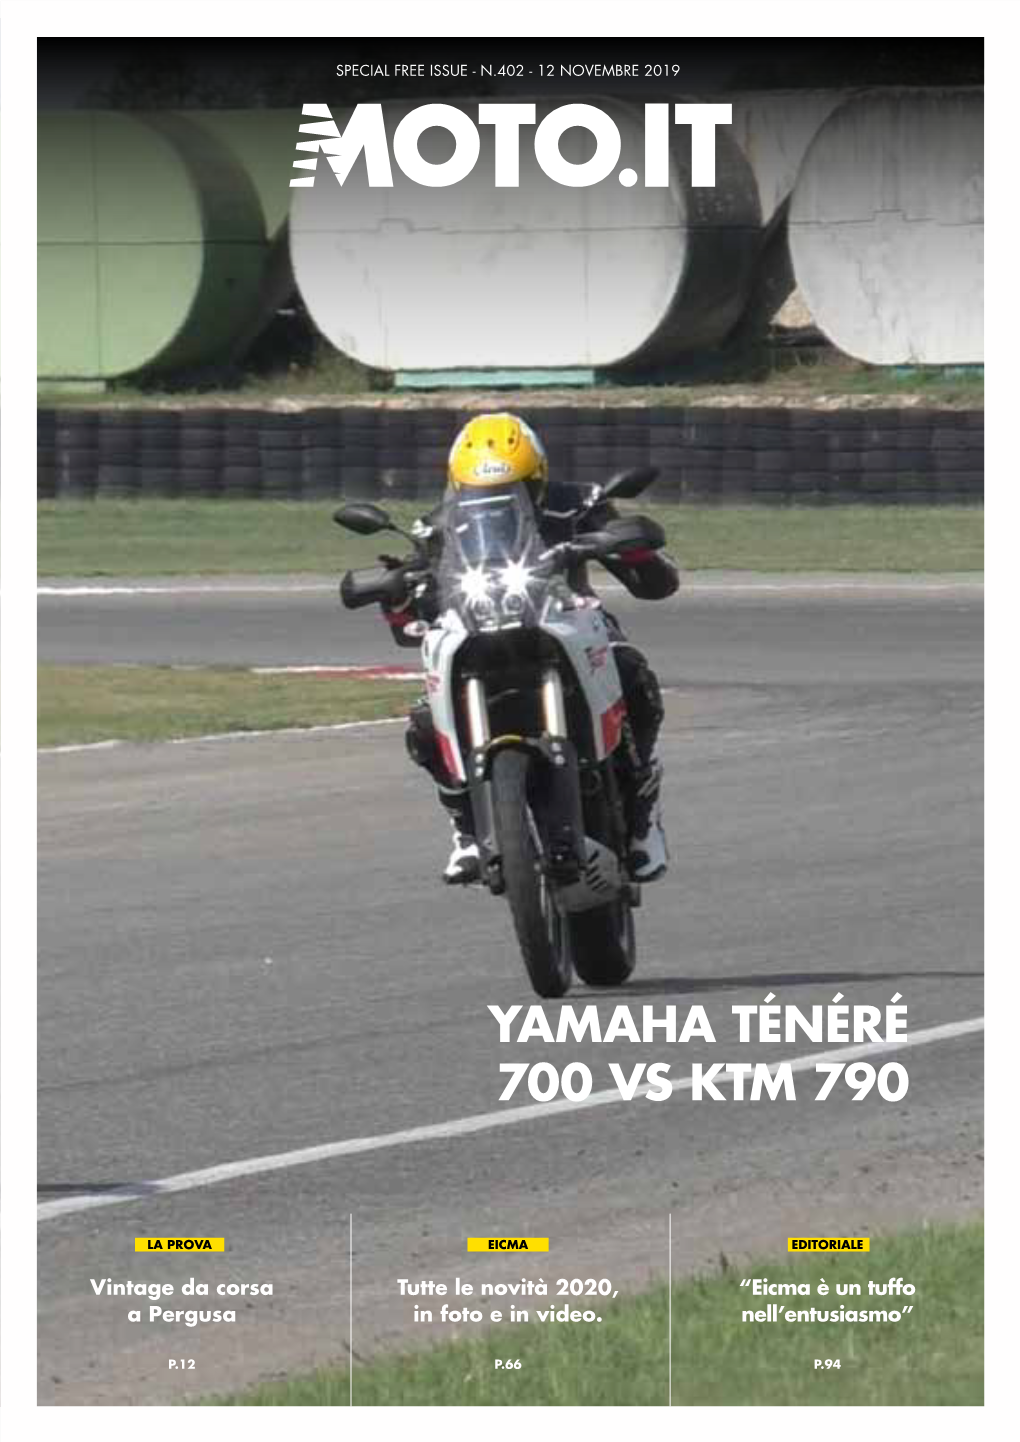 Yamaha Ténéré 700 Vs Ktm 790